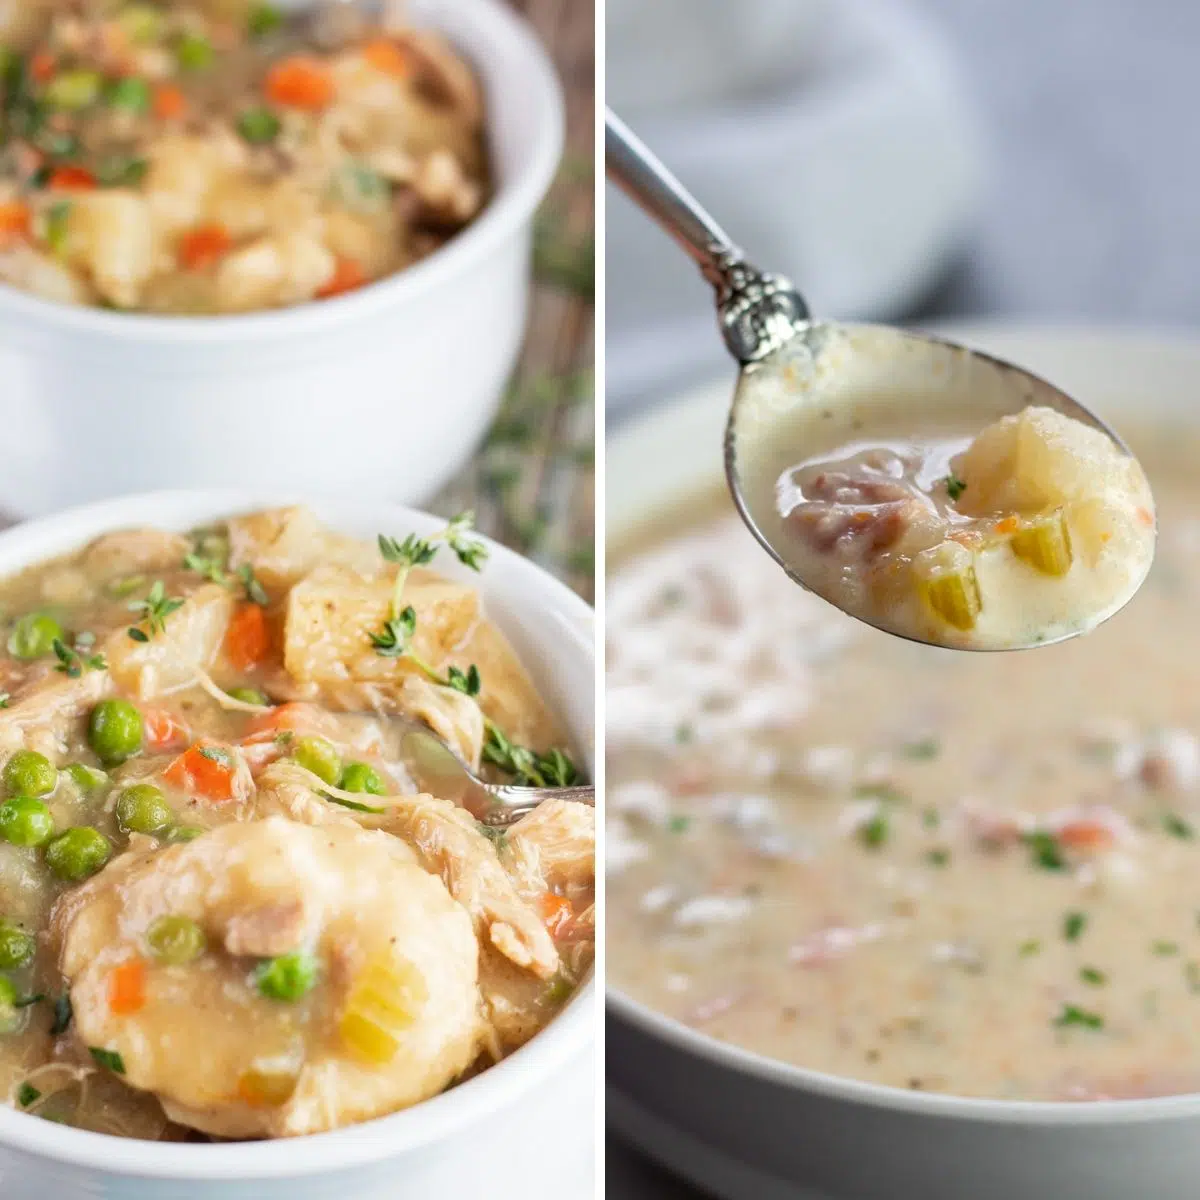 Las mejores recetas de sopa crockpot con una foto de collage de 2 imágenes de sopas servidas en tazones blancos.